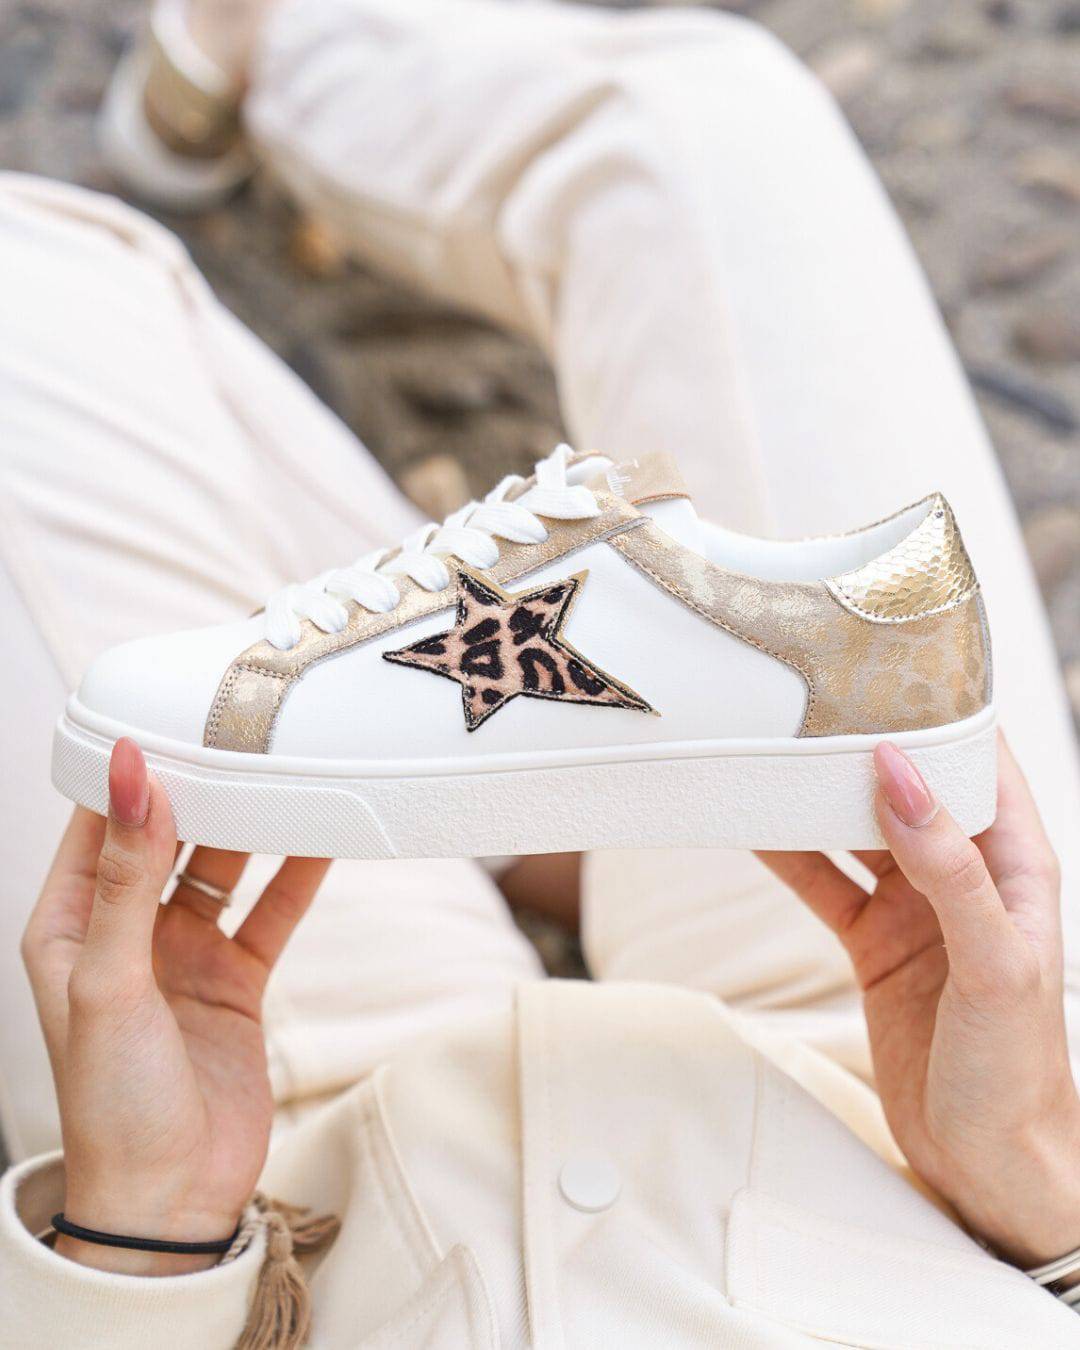 Damen-Sneaker in Weiß und Gold mit Schnürsenkeln - Sadio - Casualmode.de